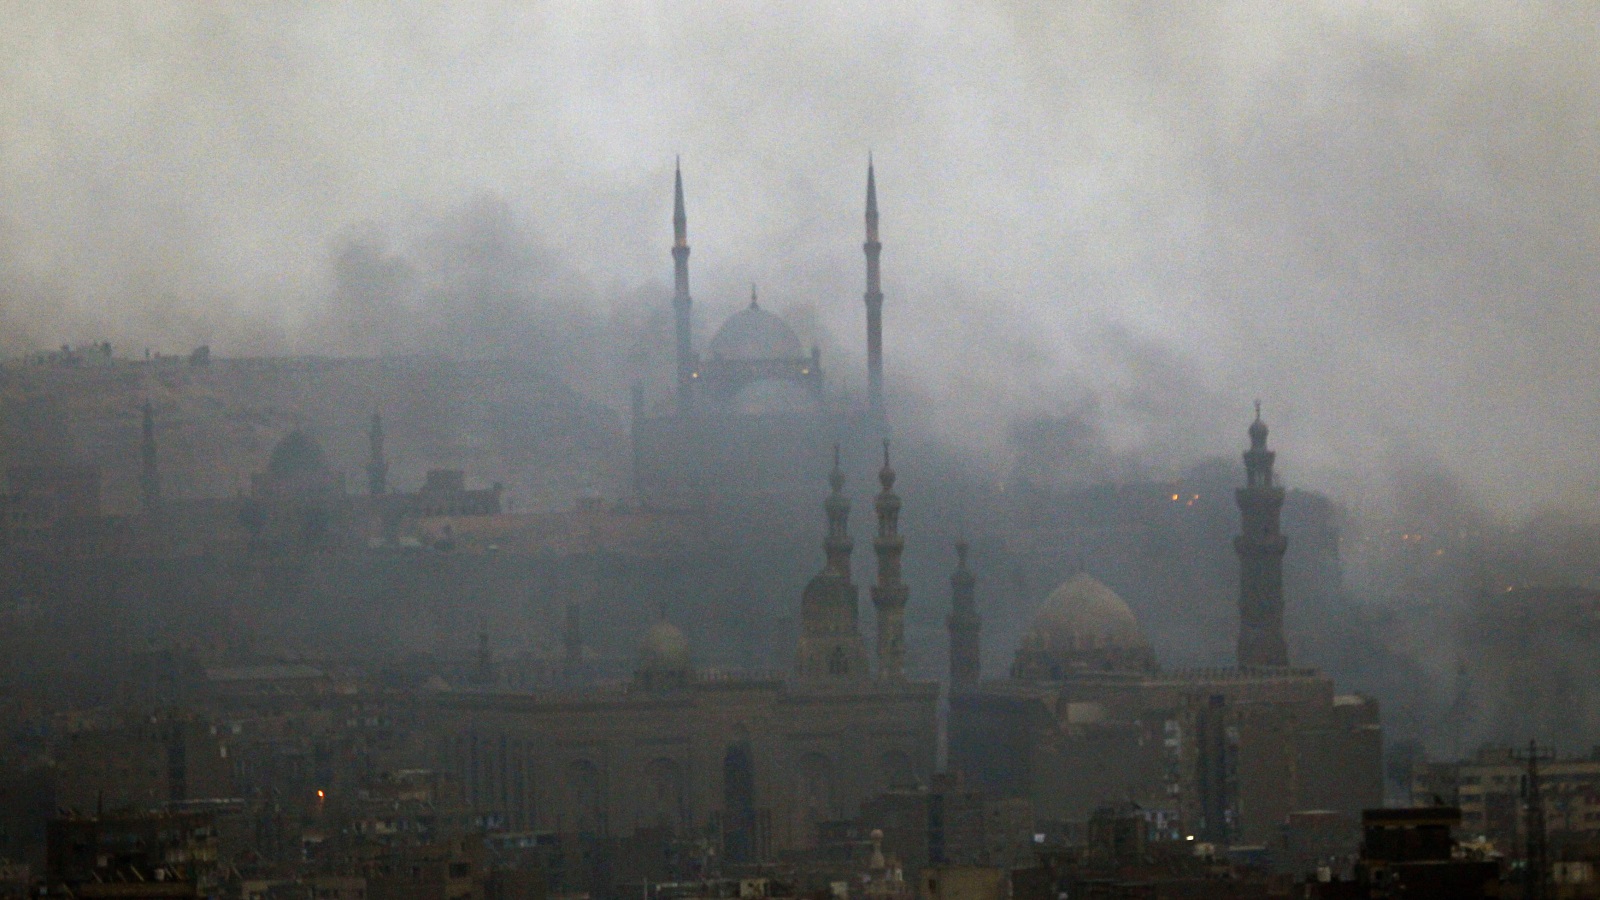 دخان كثيف في سماء القاهرة في جمعة الغضب رويترز